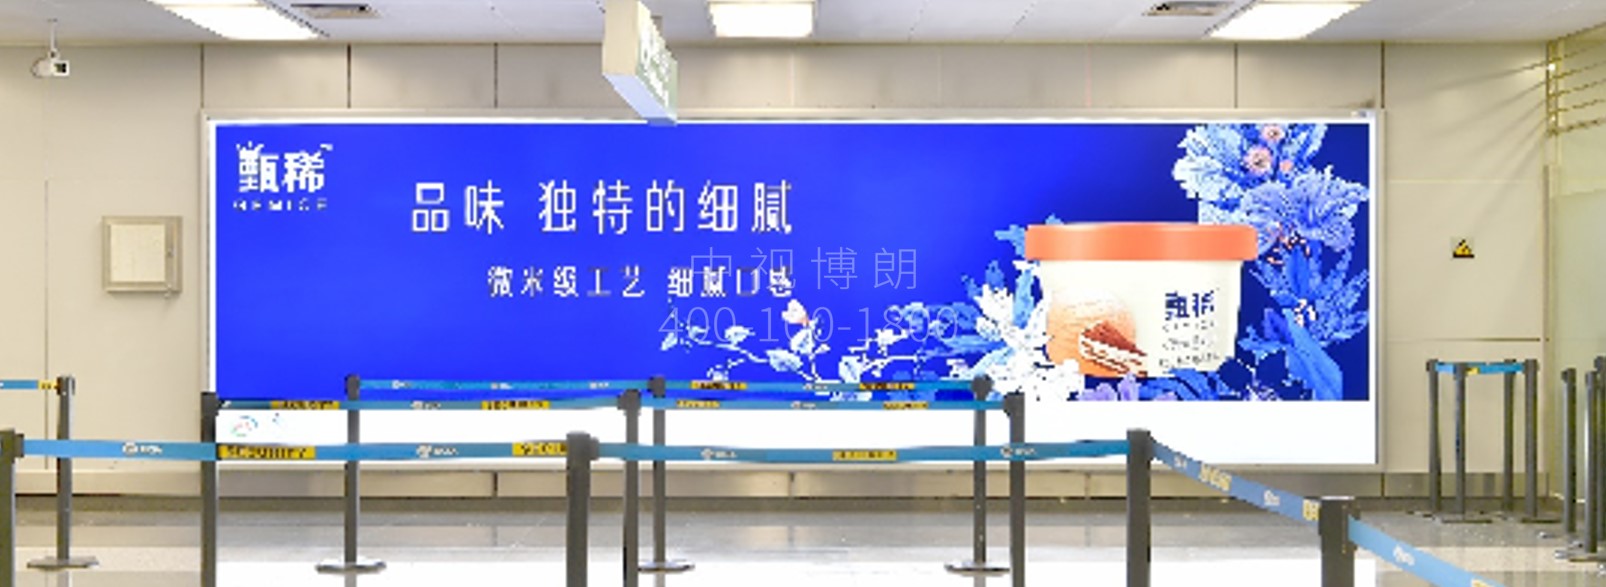 北京首都机场广告-T2 Domestic Departure Security Check Wall Light Box